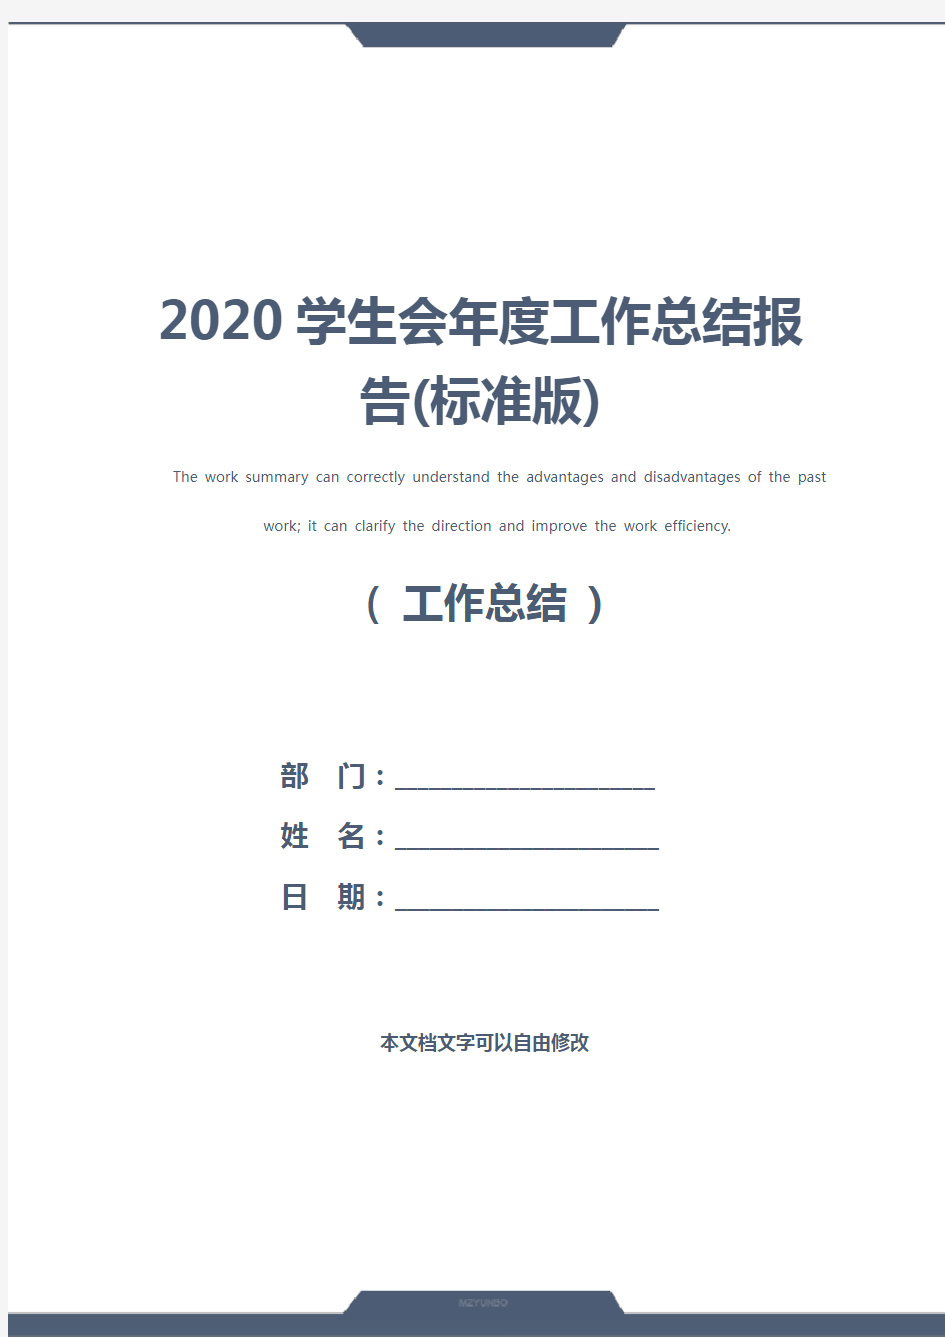 2020学生会年度工作总结报告(标准版)